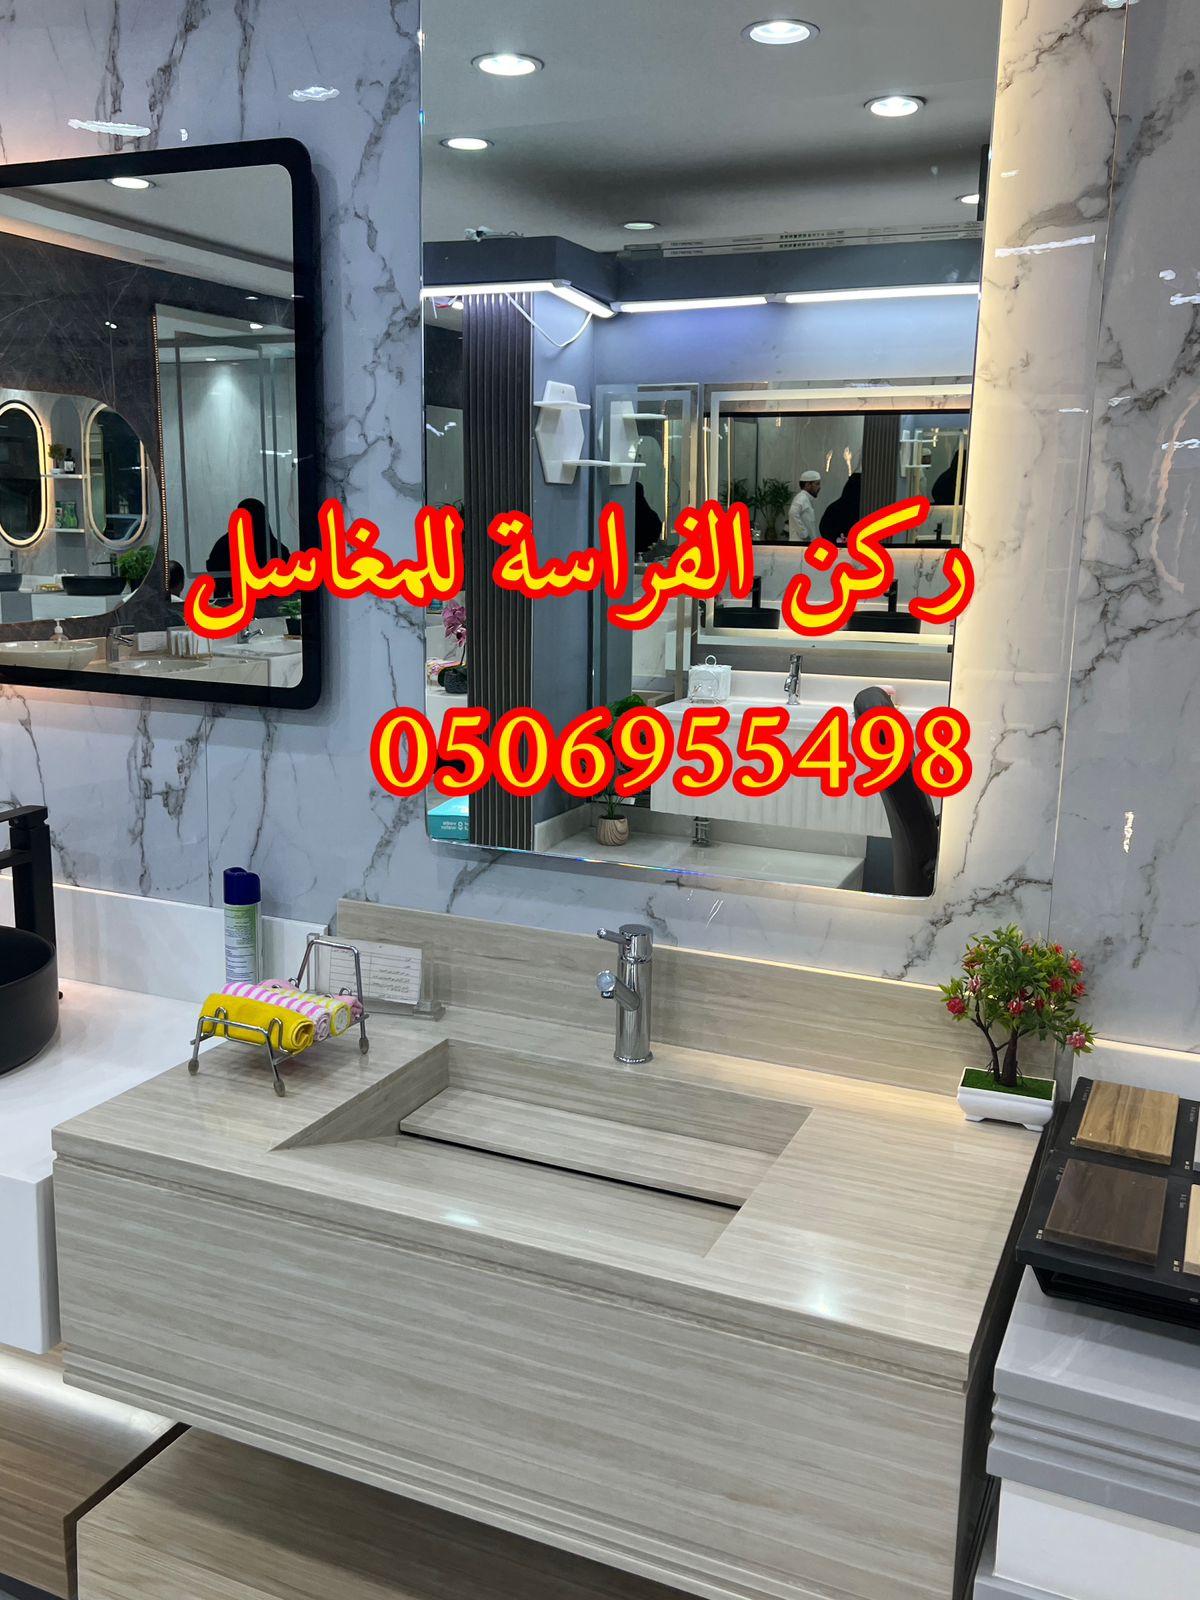 الرياض - تركيب مغاسل حمامات رخام في الرياض, 0506955498 875898643